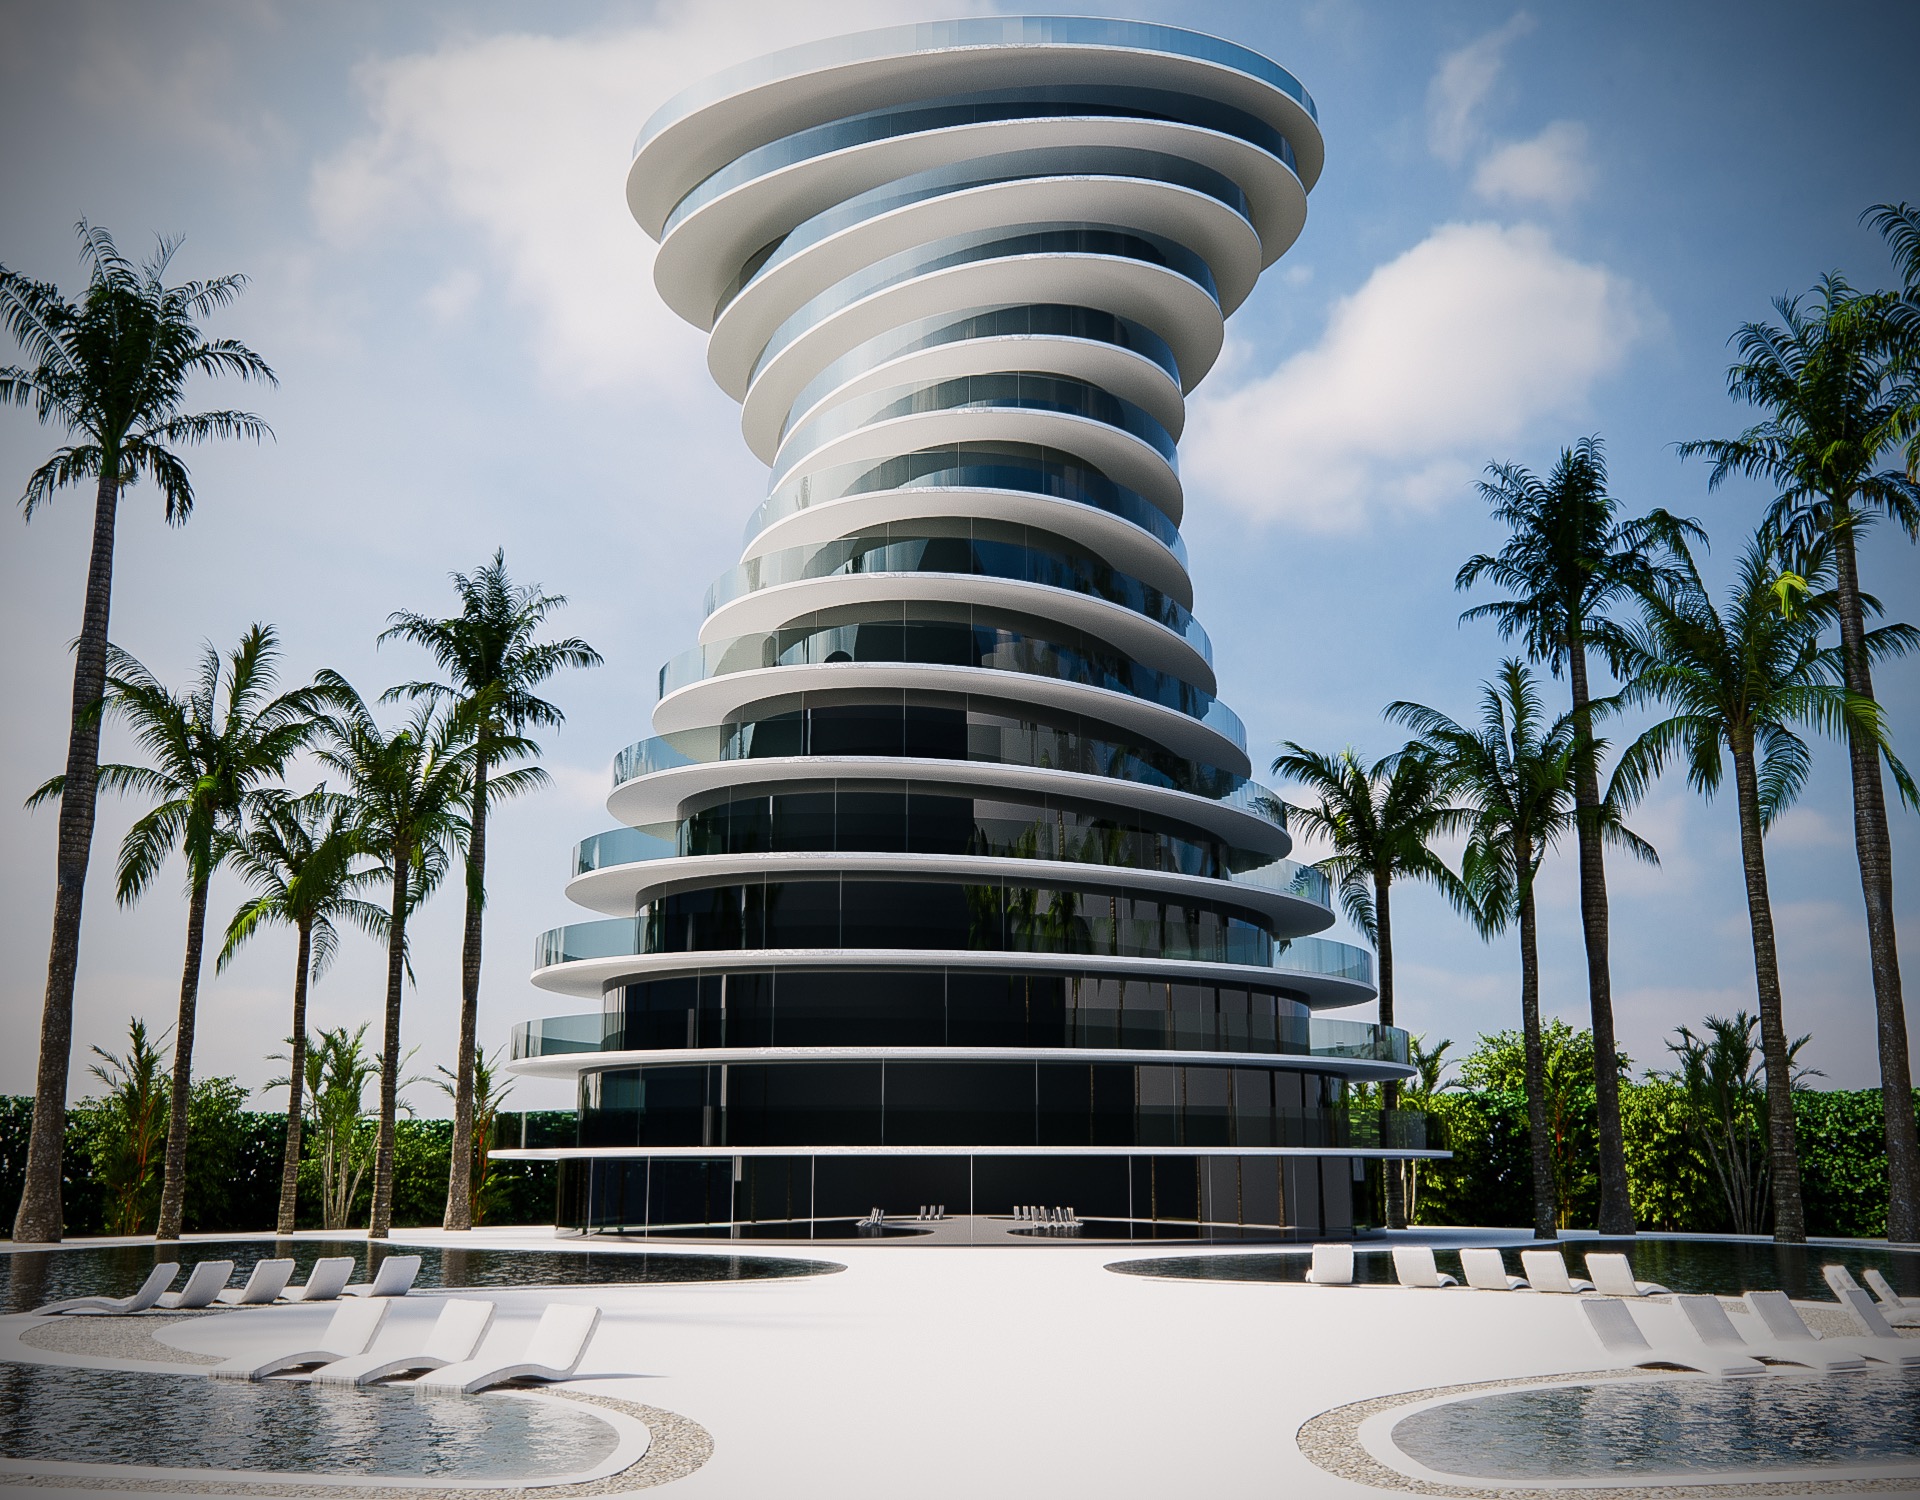 Onda Luxury Residential Tower Architettura Made in Italy opera dell’estro di Giacomo Fava